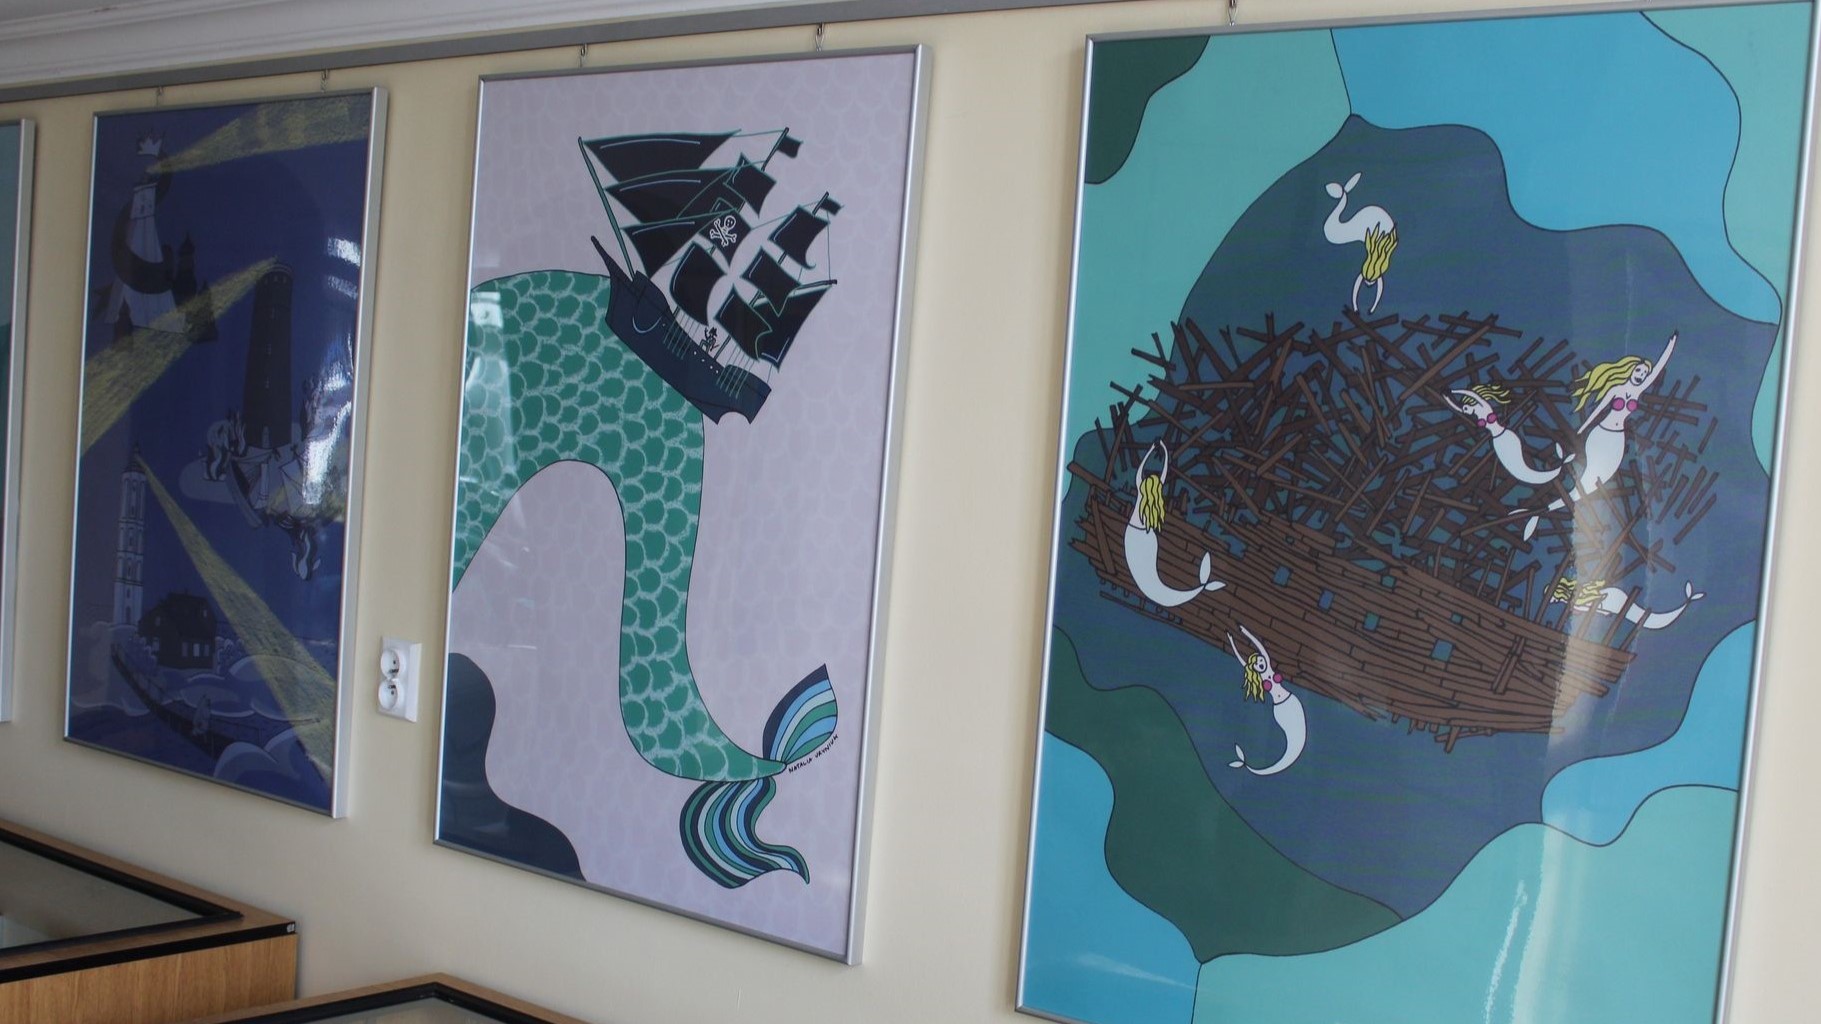 zdjęcie na którym są przedstawione 3 plansze z obrazkami z motywem morskim 